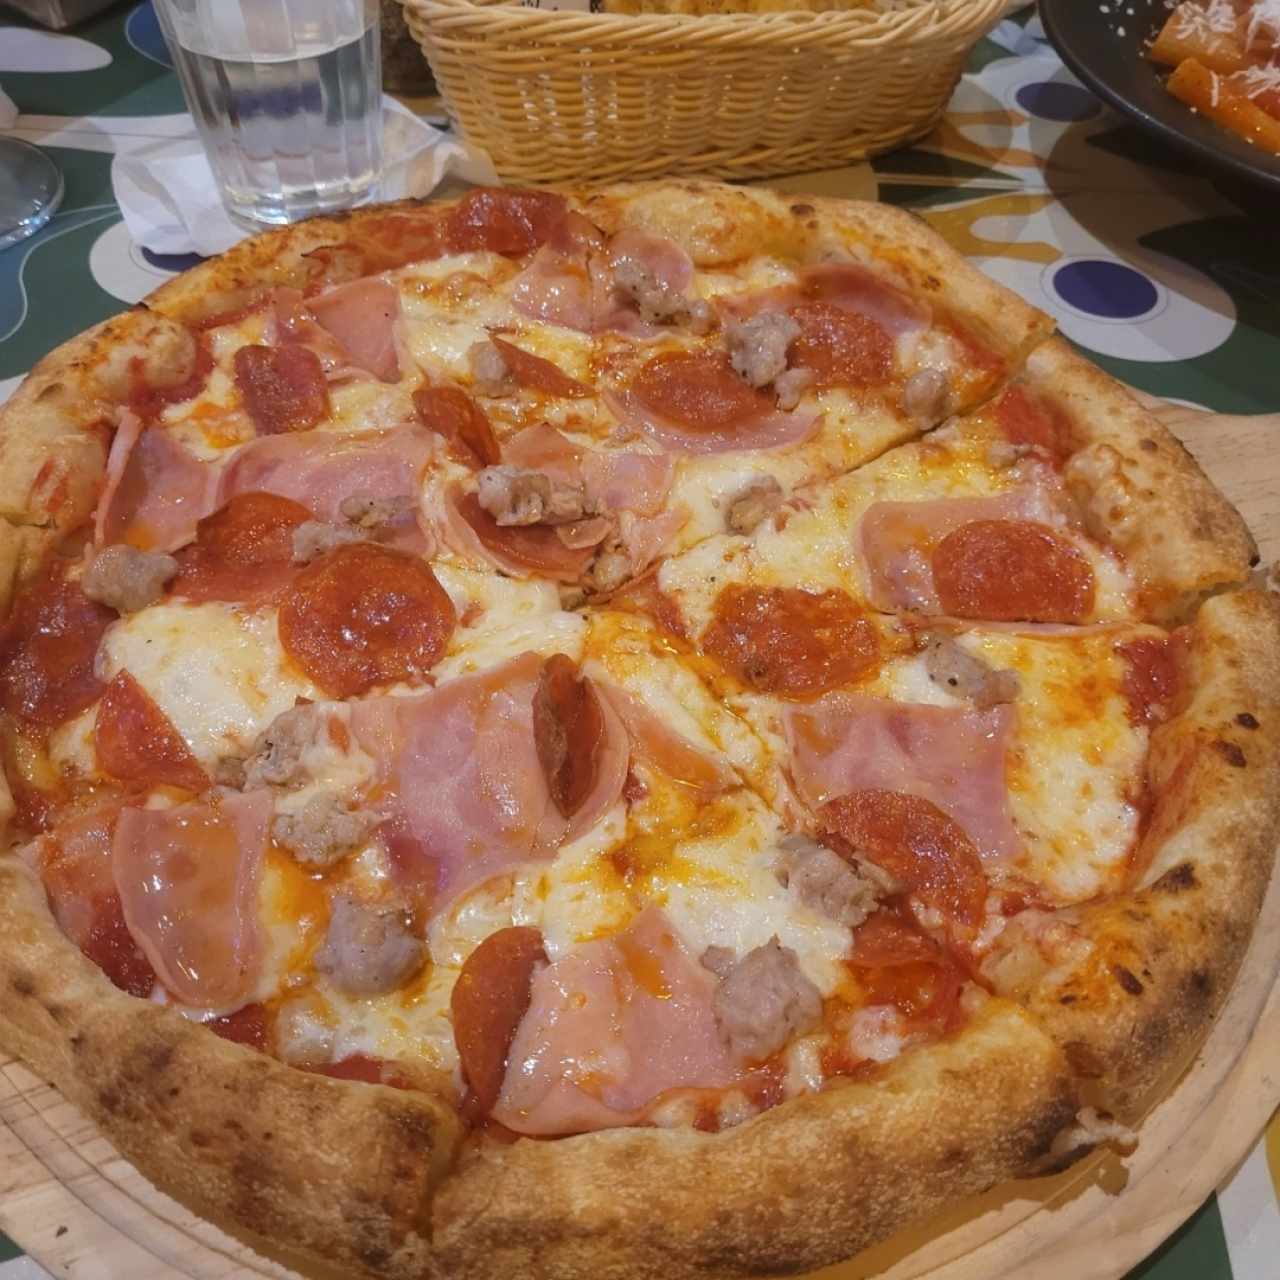 Pizzas Rojas - Carnívora